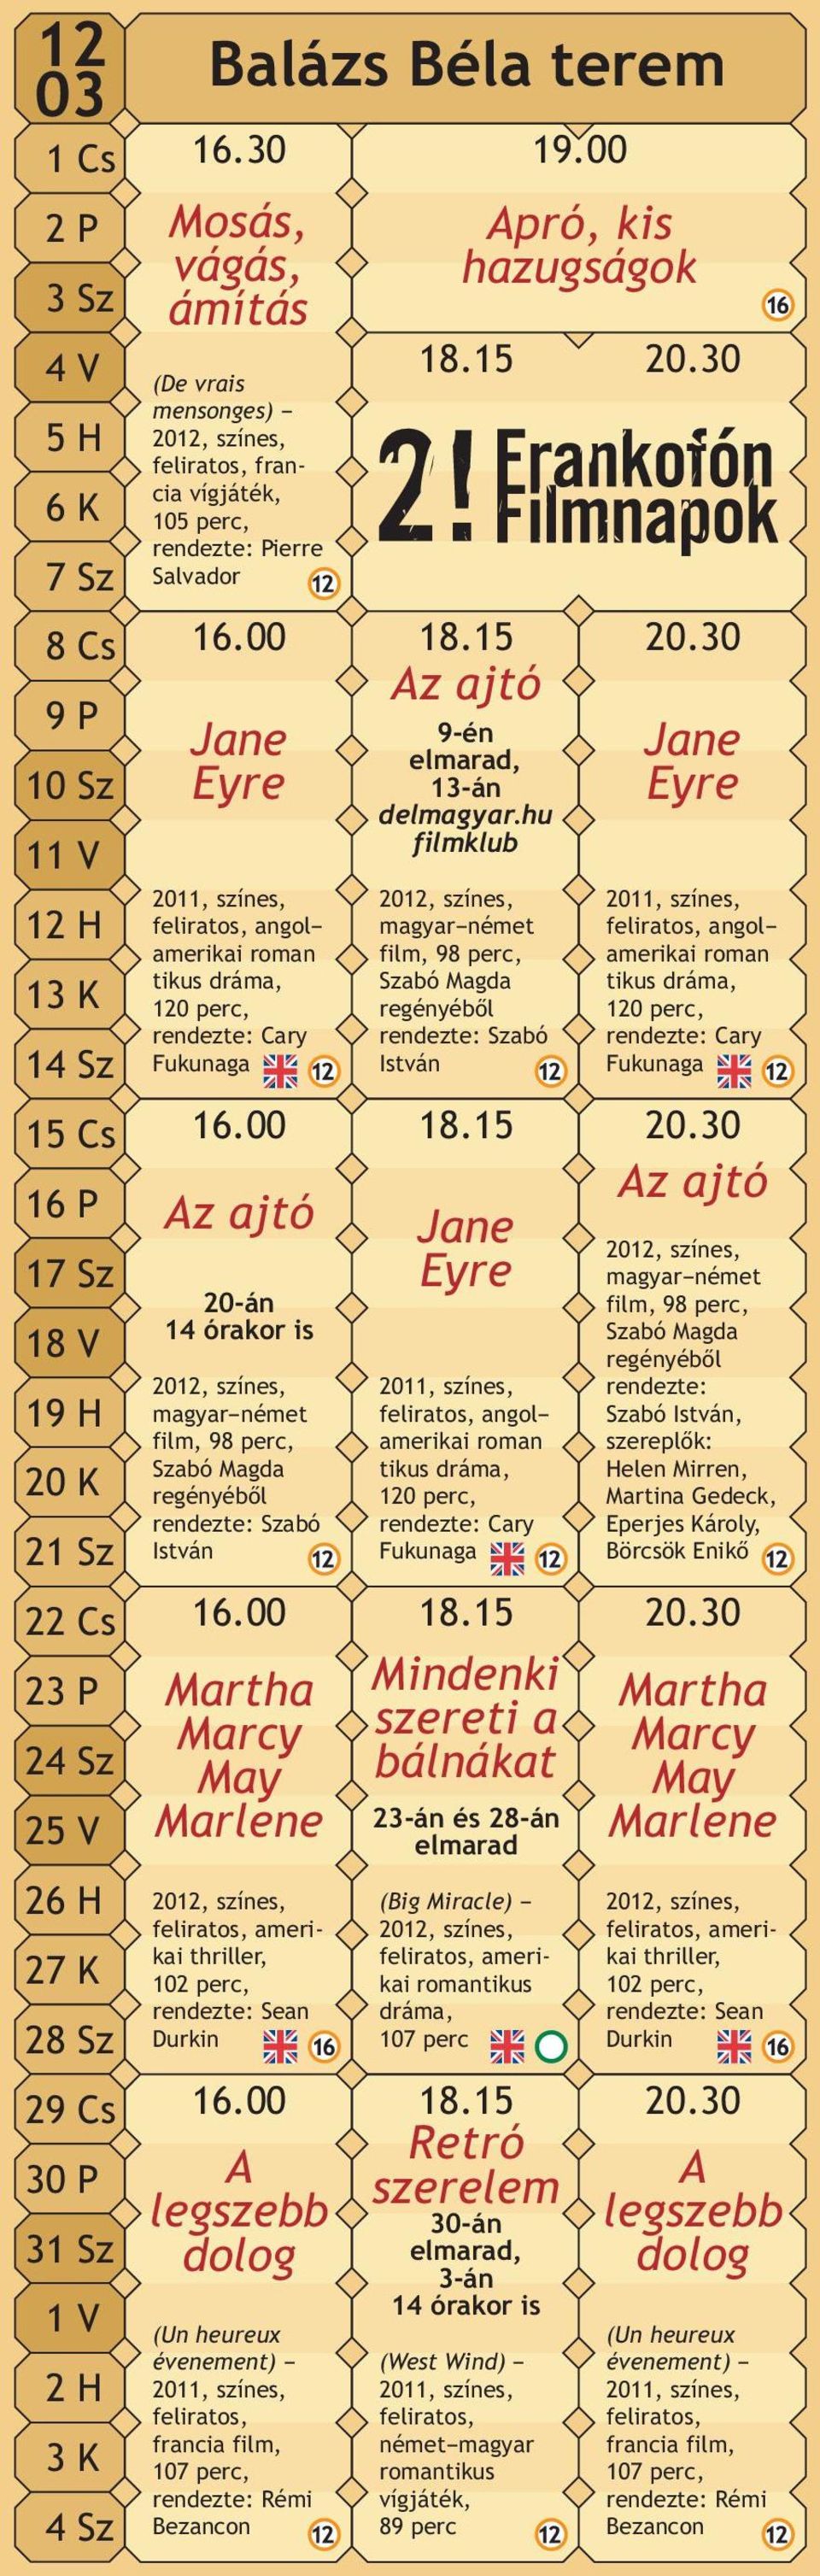 30 Az ajtó Jane Eyre Jane Eyre 2011, színes, feliratos, angol amerikai roman tikus dráma, 120 perc, rendezte: Cary Fukunaga 16.00 18.15 20.